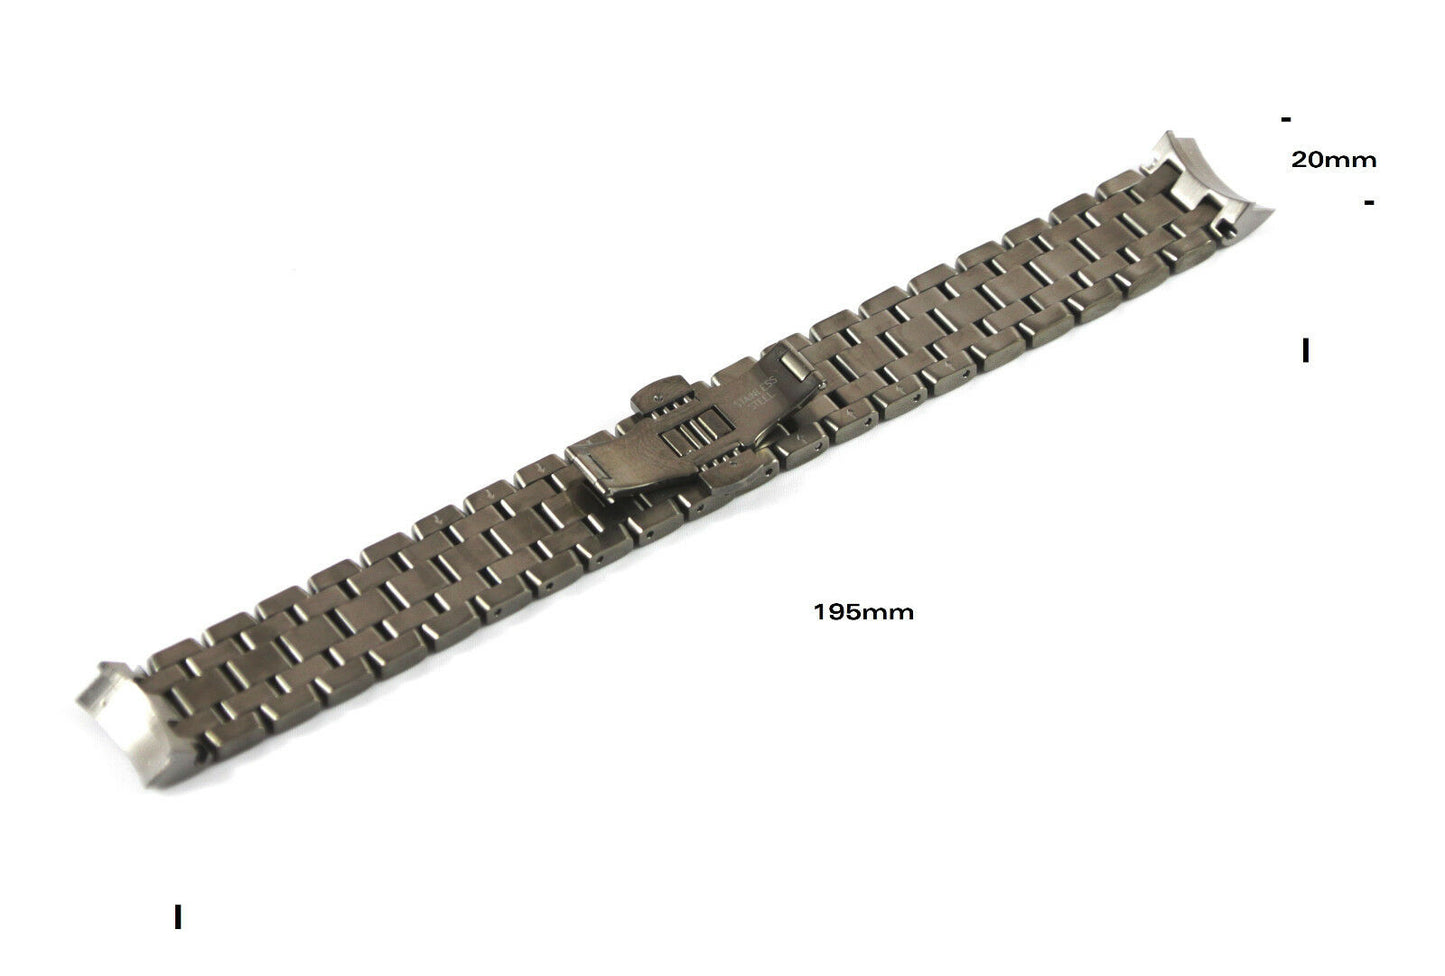 Timex TX Ersatzarmband T3C325 für alle Modelle der TX 730 Serie - Ersatzband